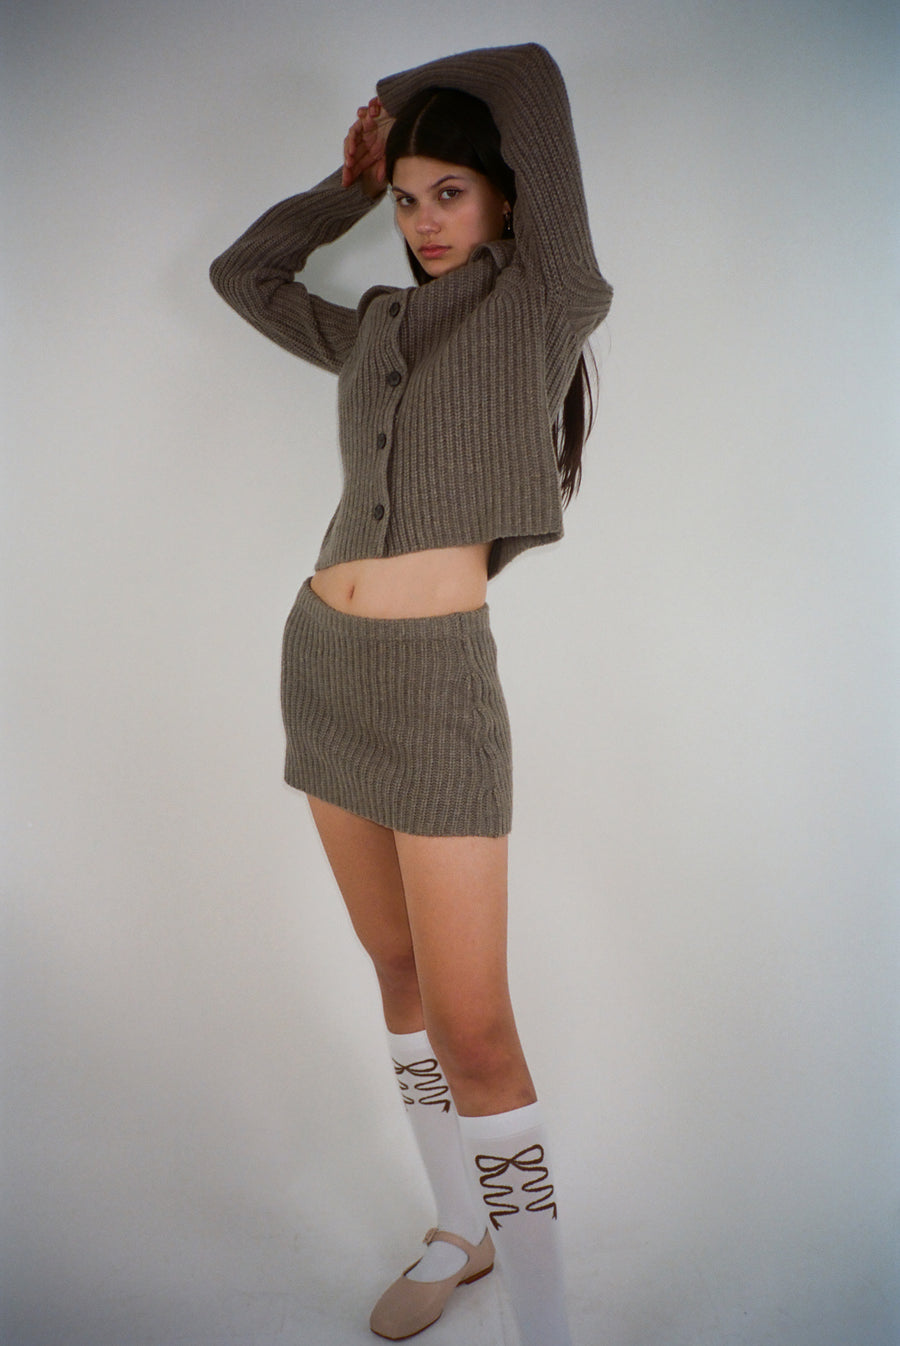 Knit mini skirt in hojicha brown on model